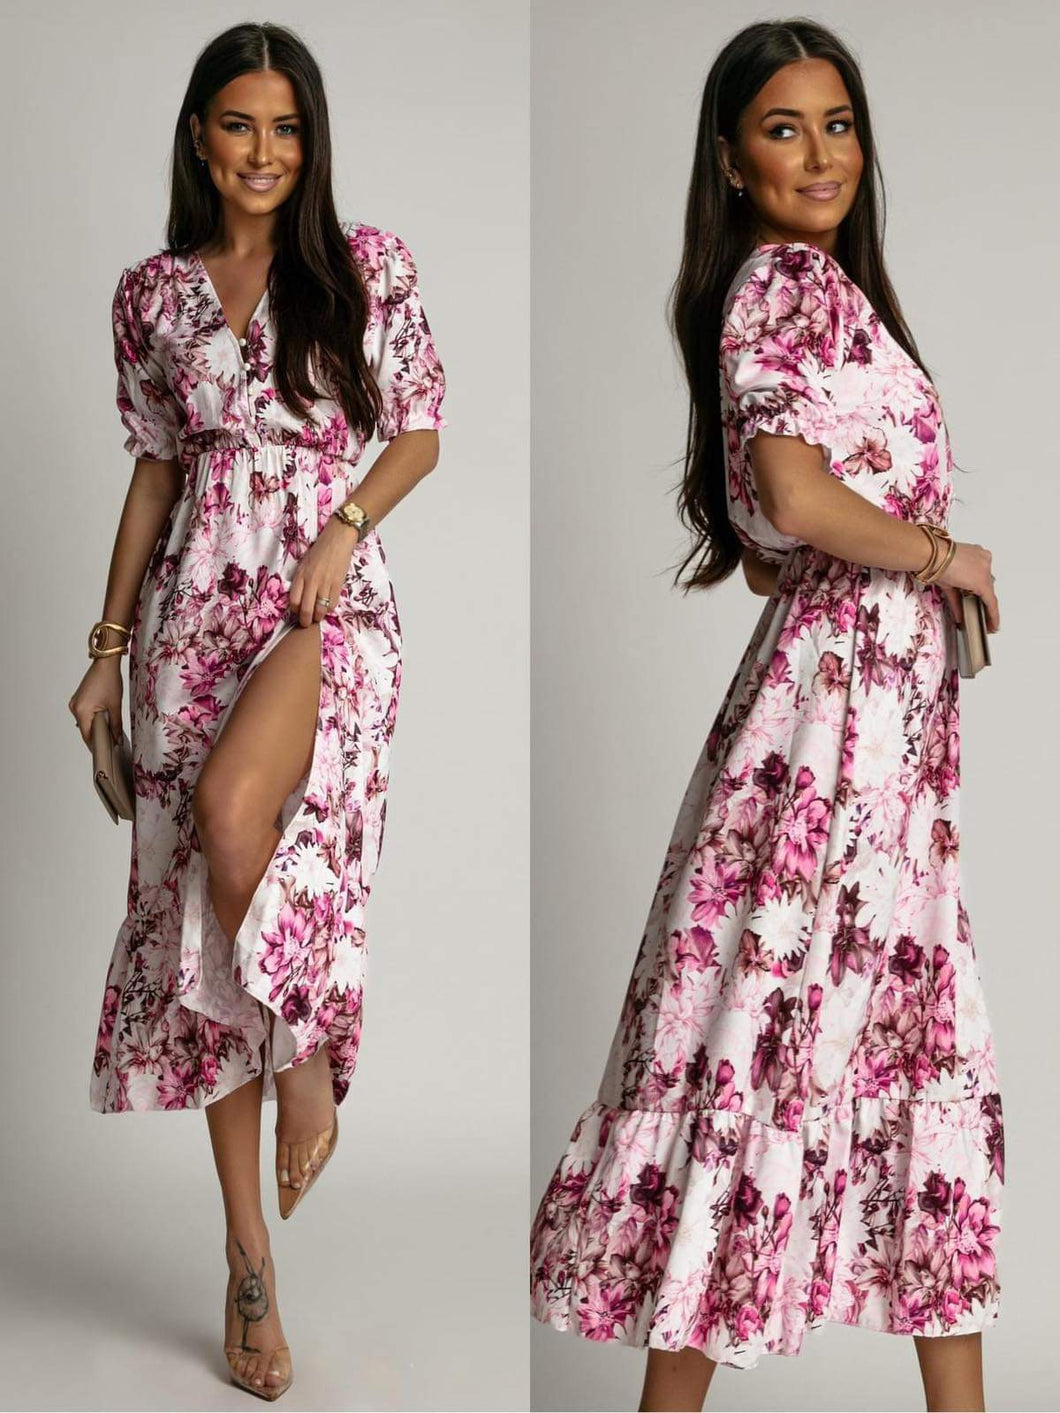 41136-06/ φόρεμα floral μιντι με σκισιμο / ροζ